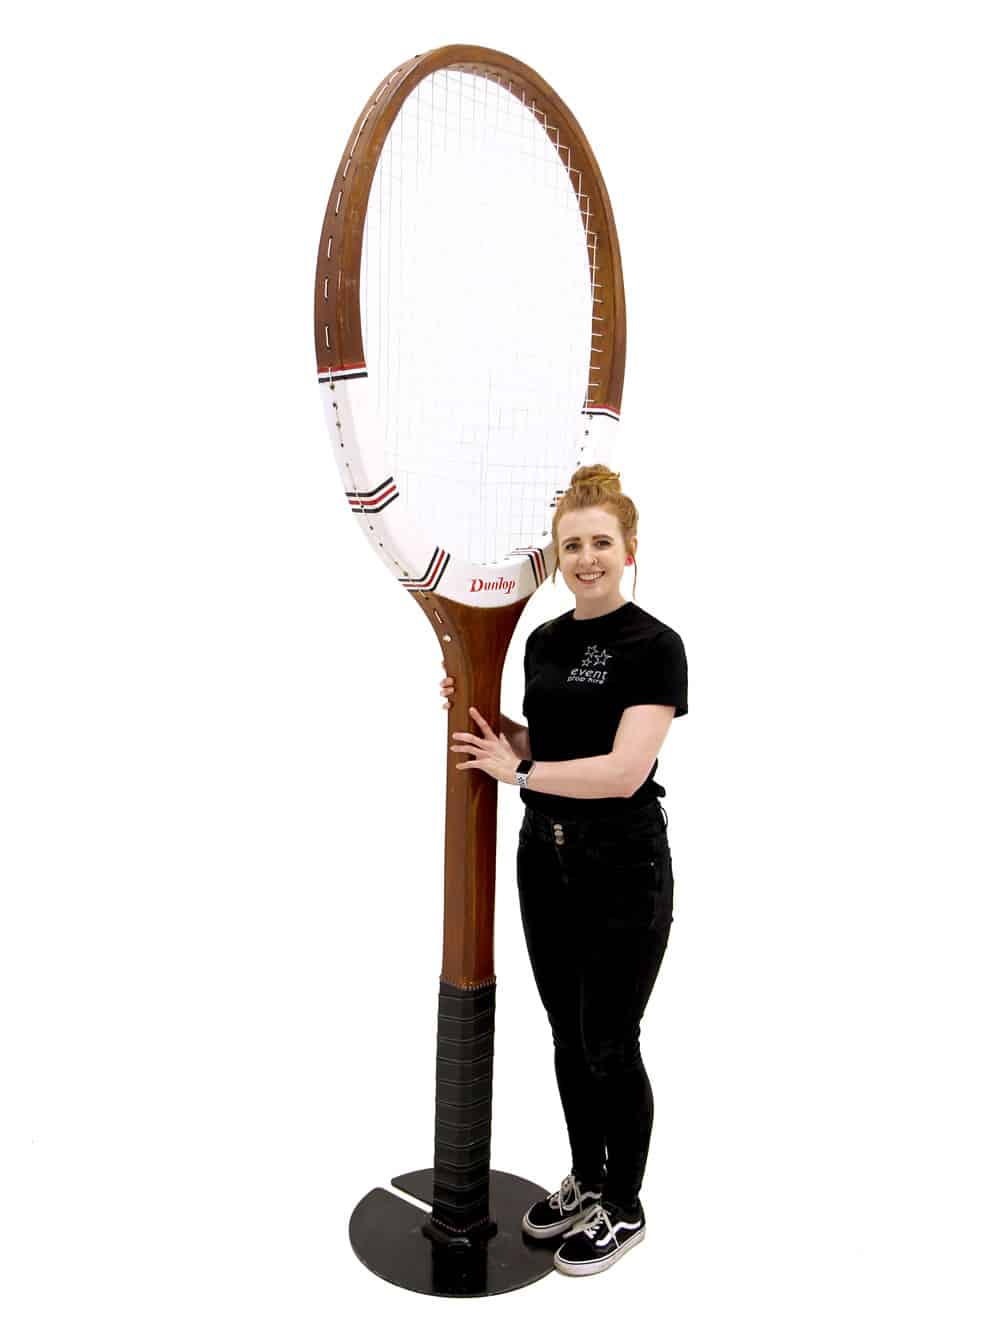 Giant Wooden Tennis Racket